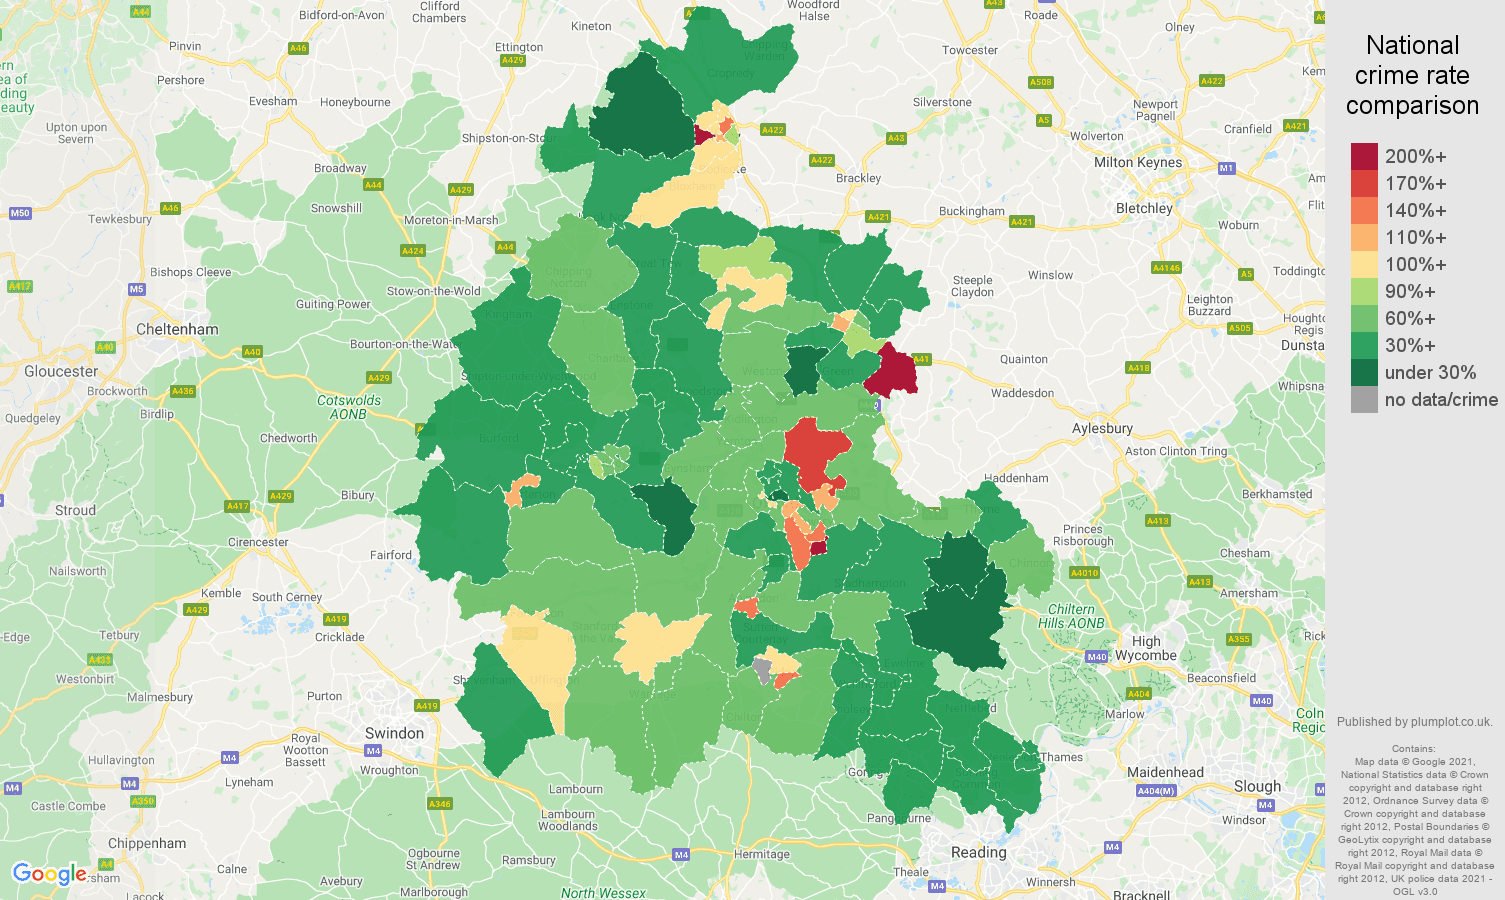 Oxfordshire violent crime rate comparison map